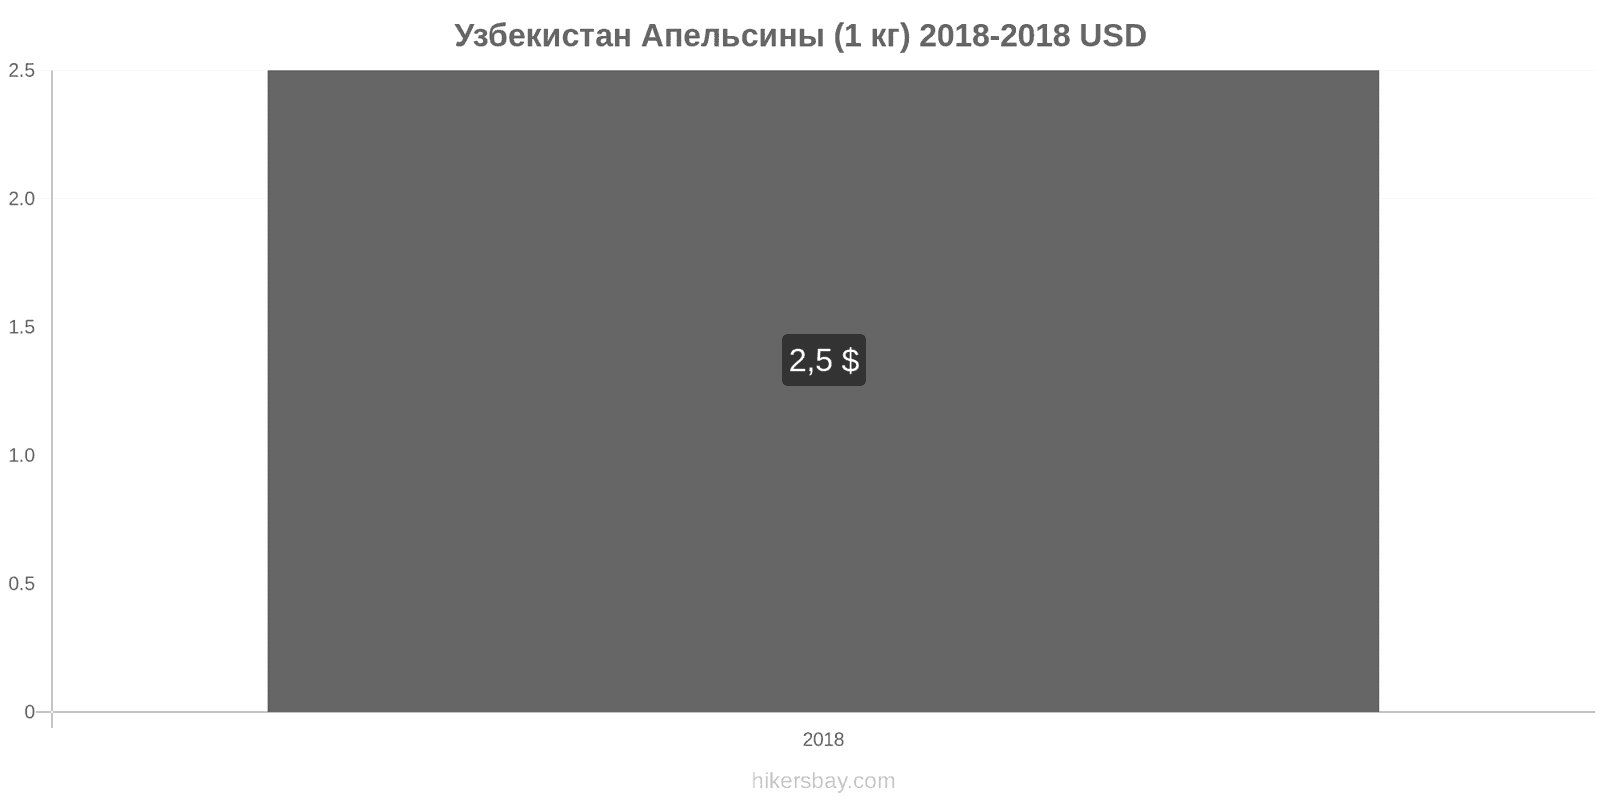 Узбекистан изменения цен Апельсины (1 кг) hikersbay.com